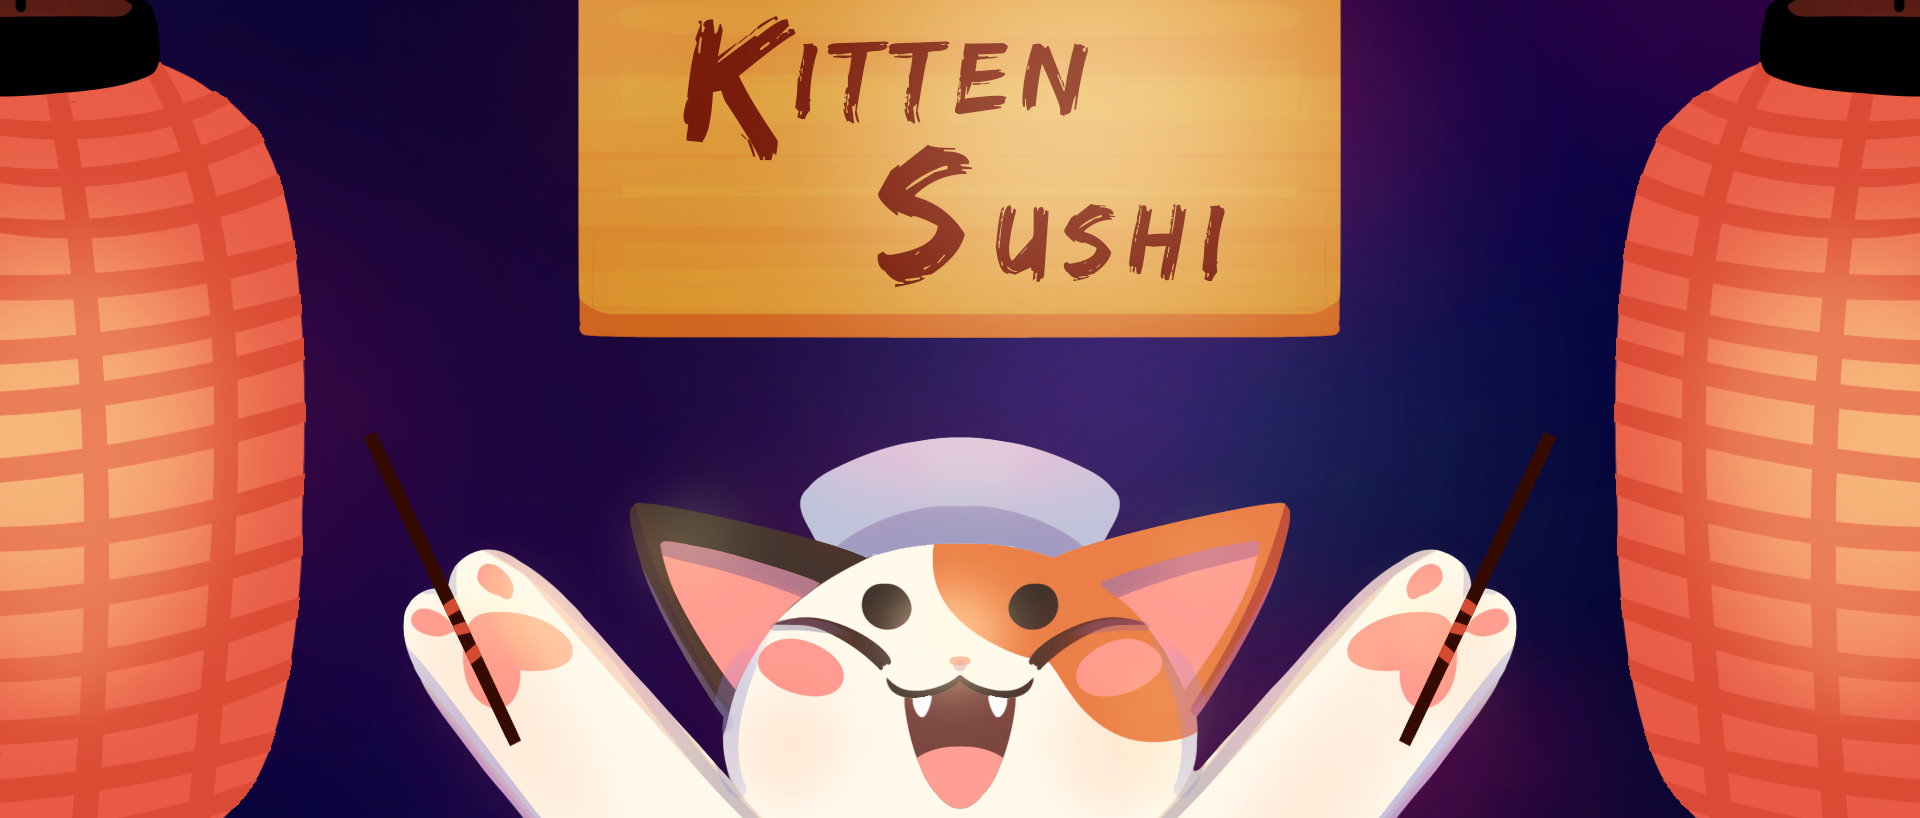 sushio kittan